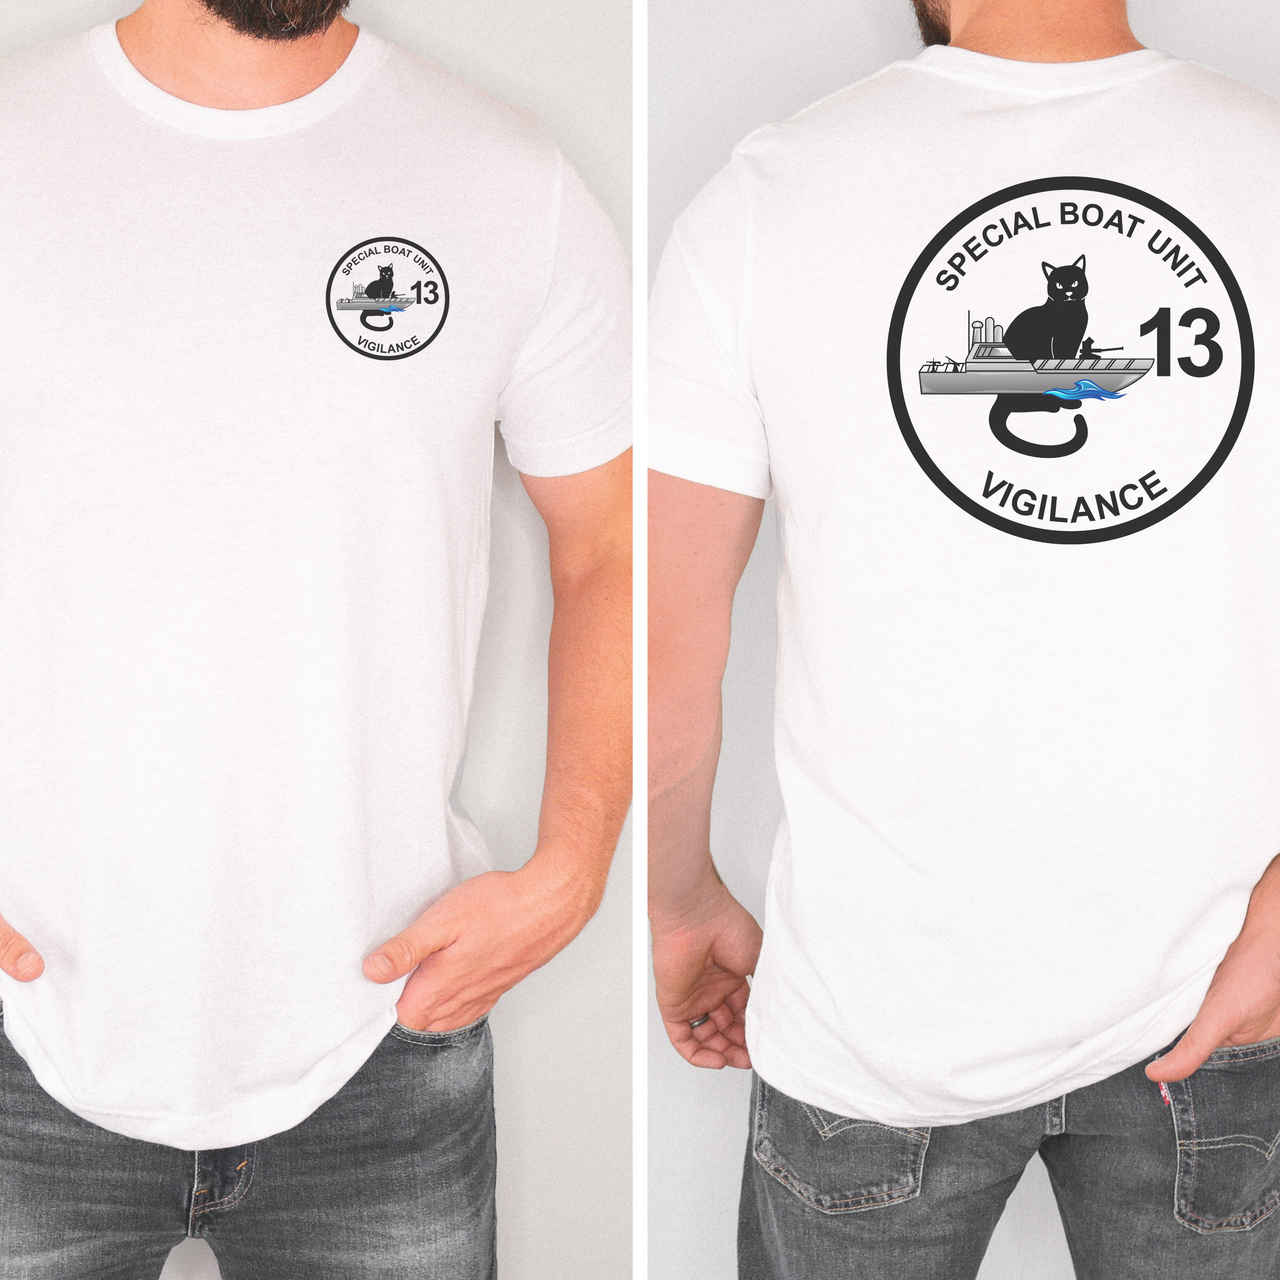 Special Boat Unit 13 - SBU13 T-Shirt (Color)